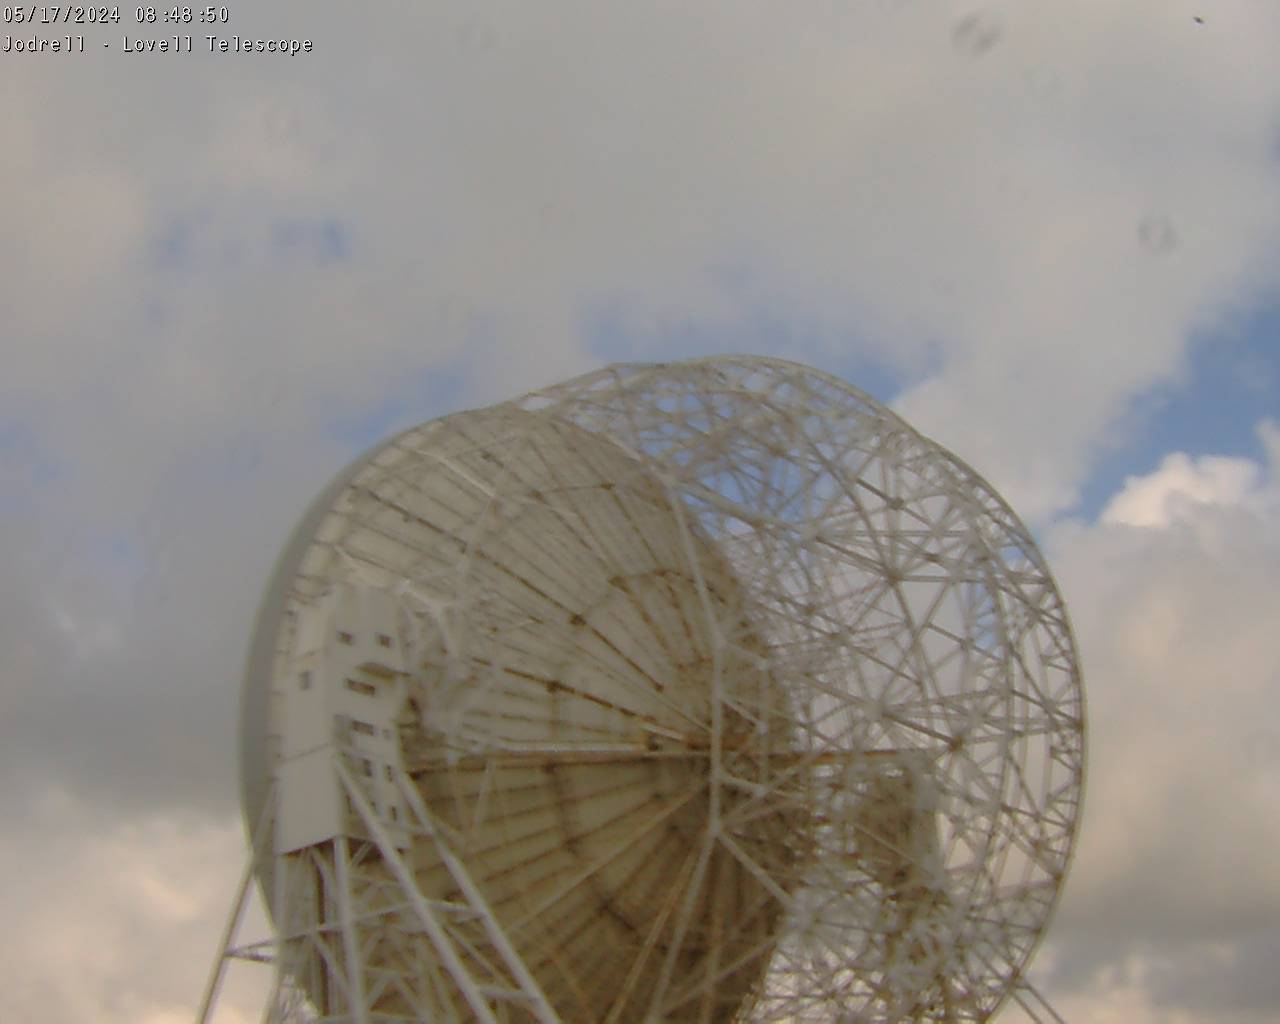 Observatorio Jodrell Bank Sáb. 08:49